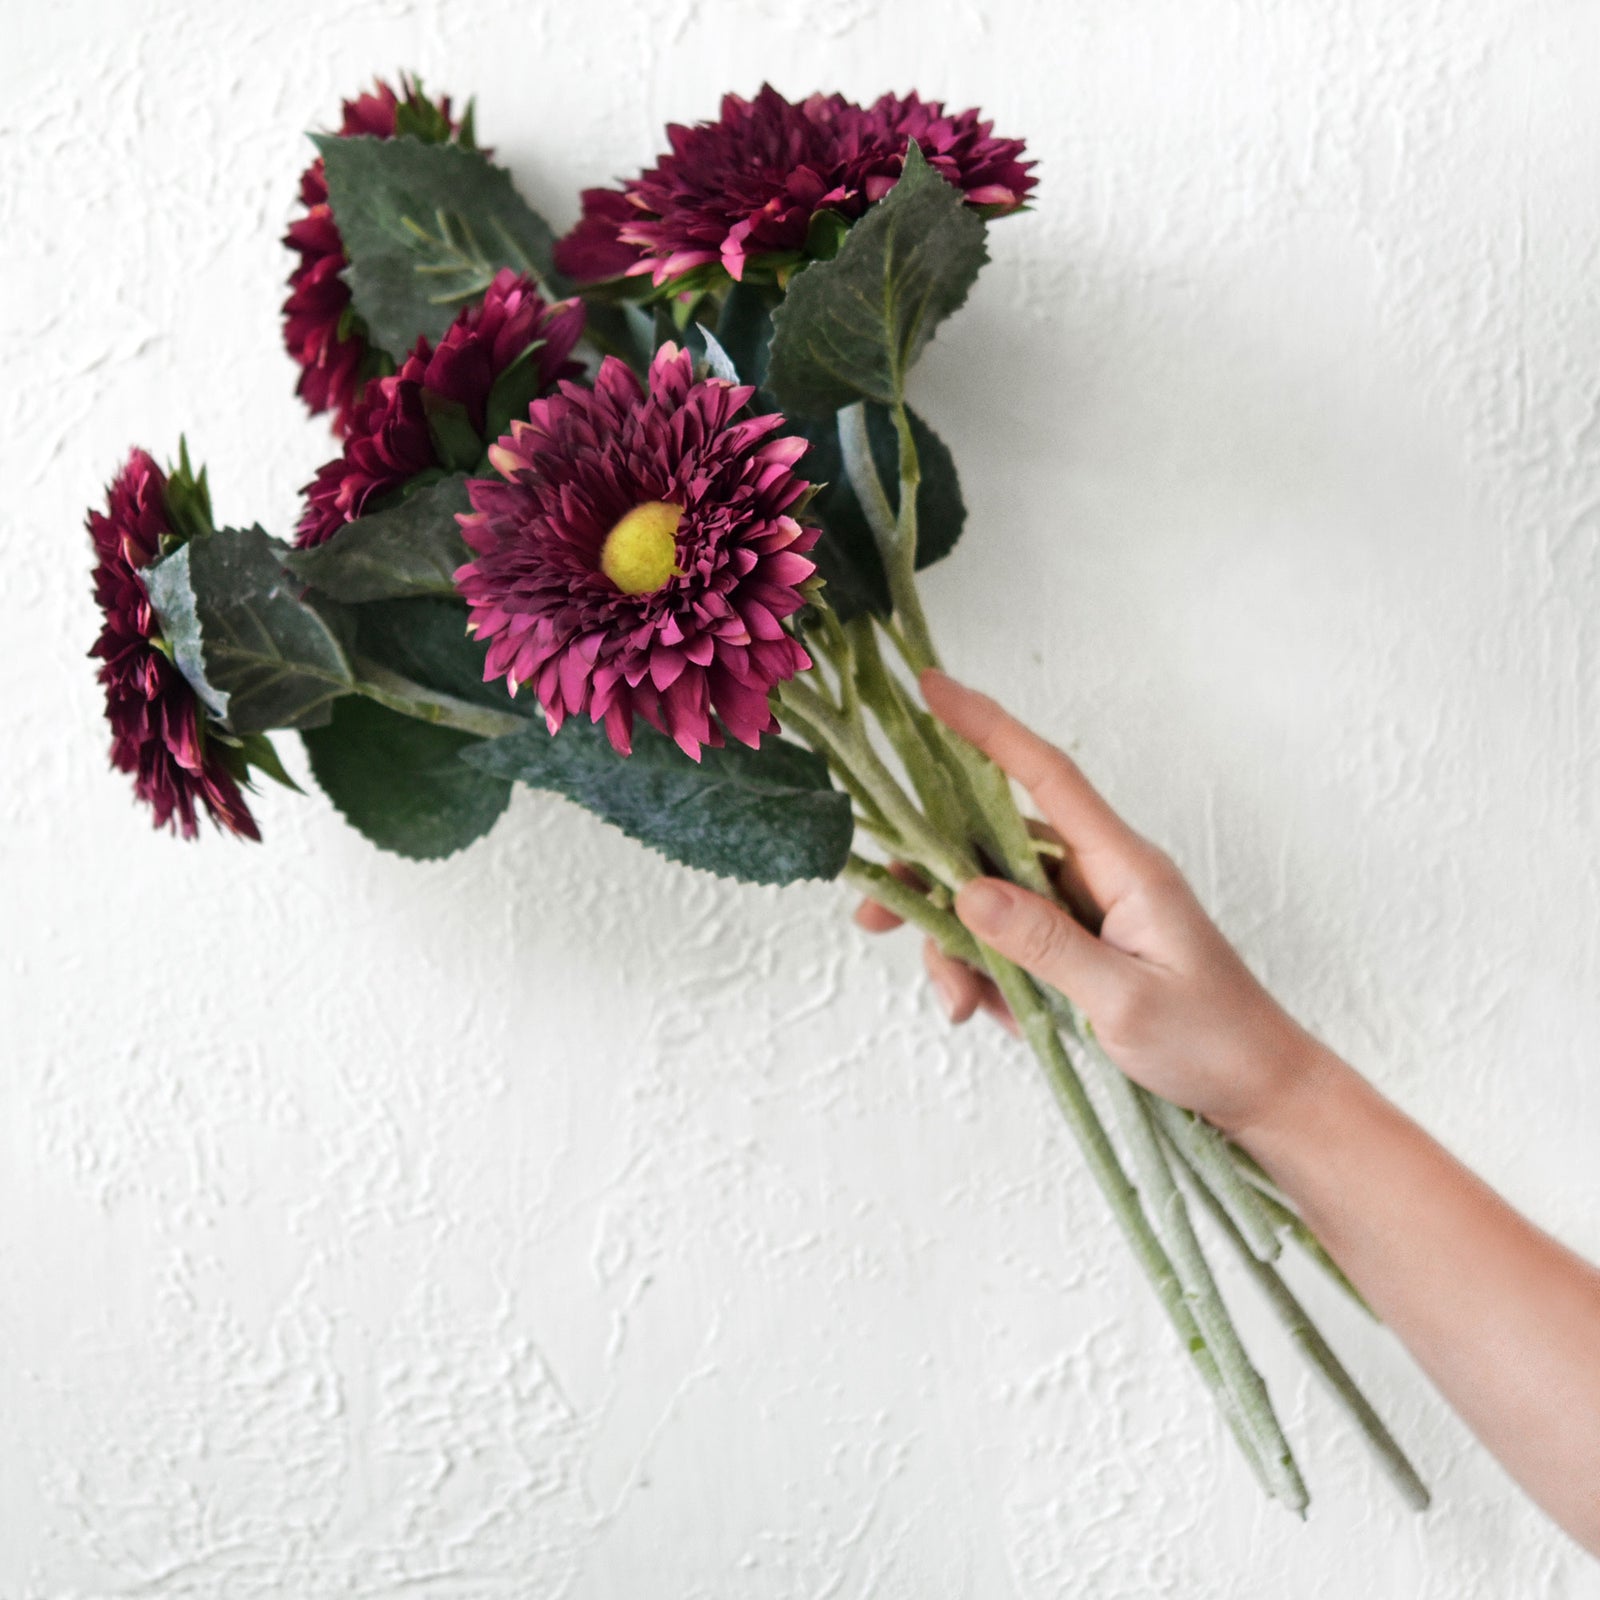 Artificial Sunflowers, Burgundy Flowers Bouquet (6 Single Stems) -FiveSeasonStuff